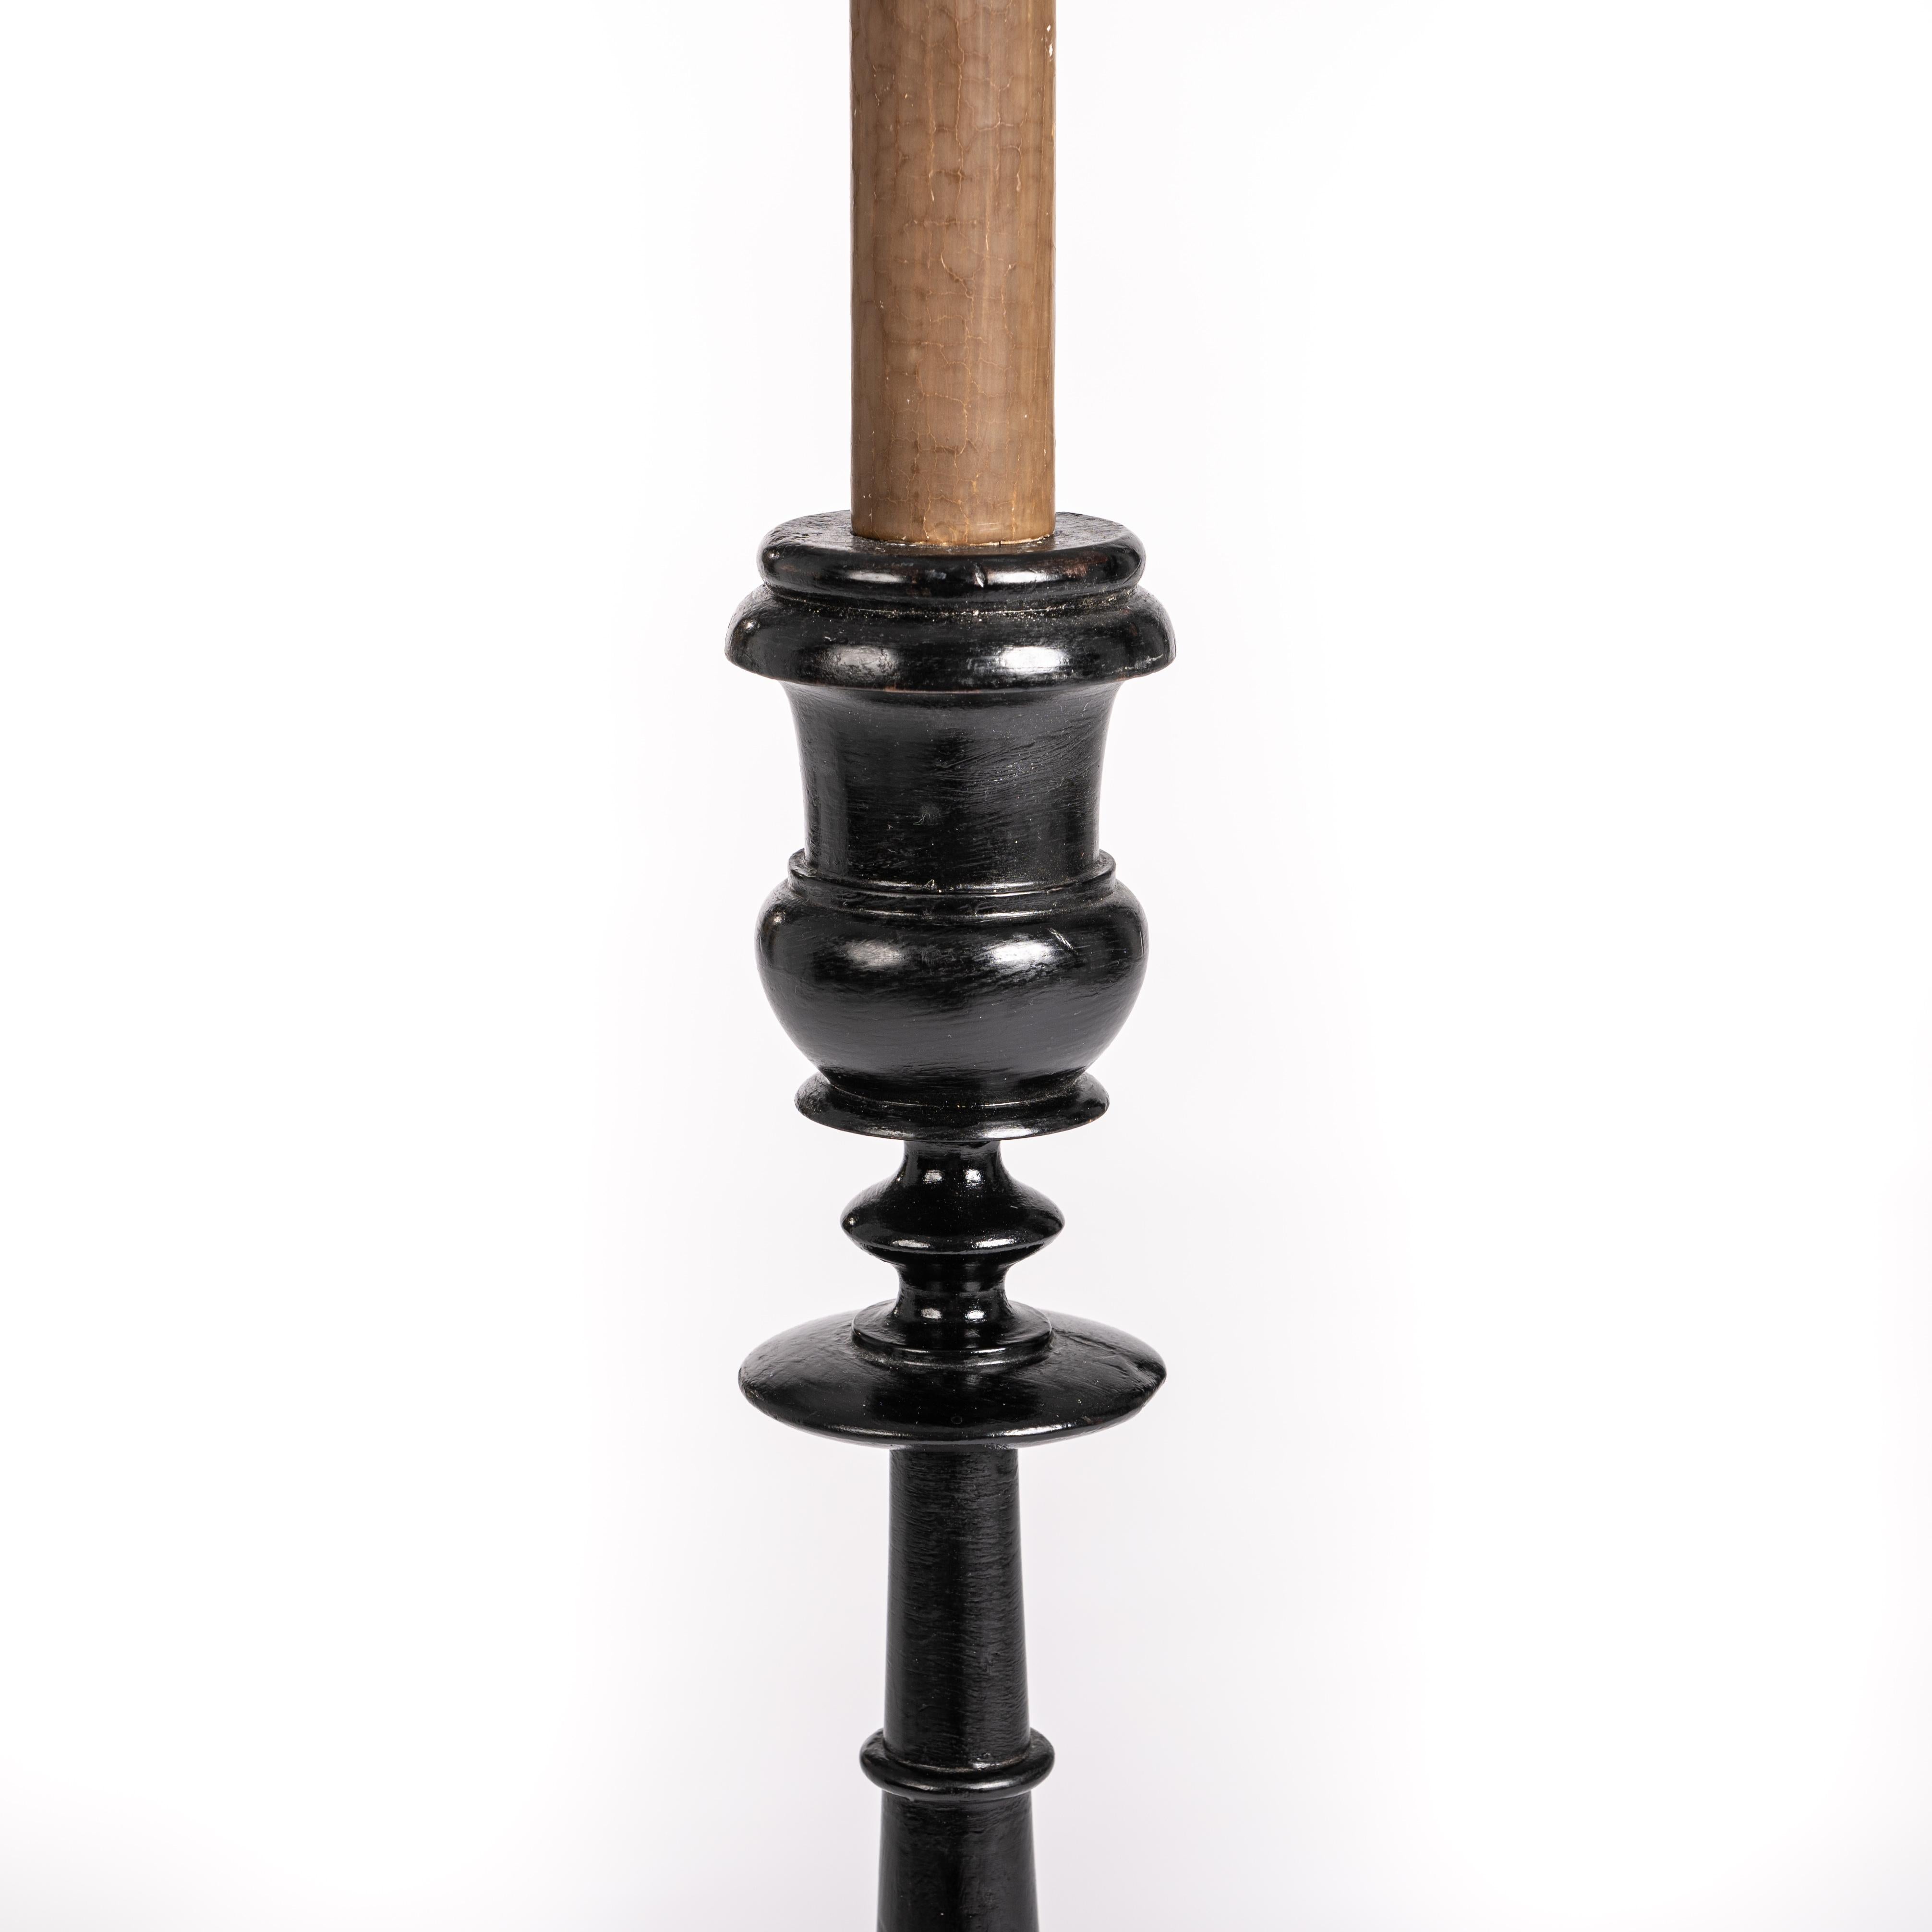 Satz von 3 großen schwarzen ebonisierten französischen Napoleon-III-Kerzenleuchtern.

Die gedrechselten Kerzenhalter haben eine elegante Siluette, die etwas höhere Basis von 15cm Durchmesser und 7cm Höhe auf 3 kleinen runden Barockfüßen bildet die